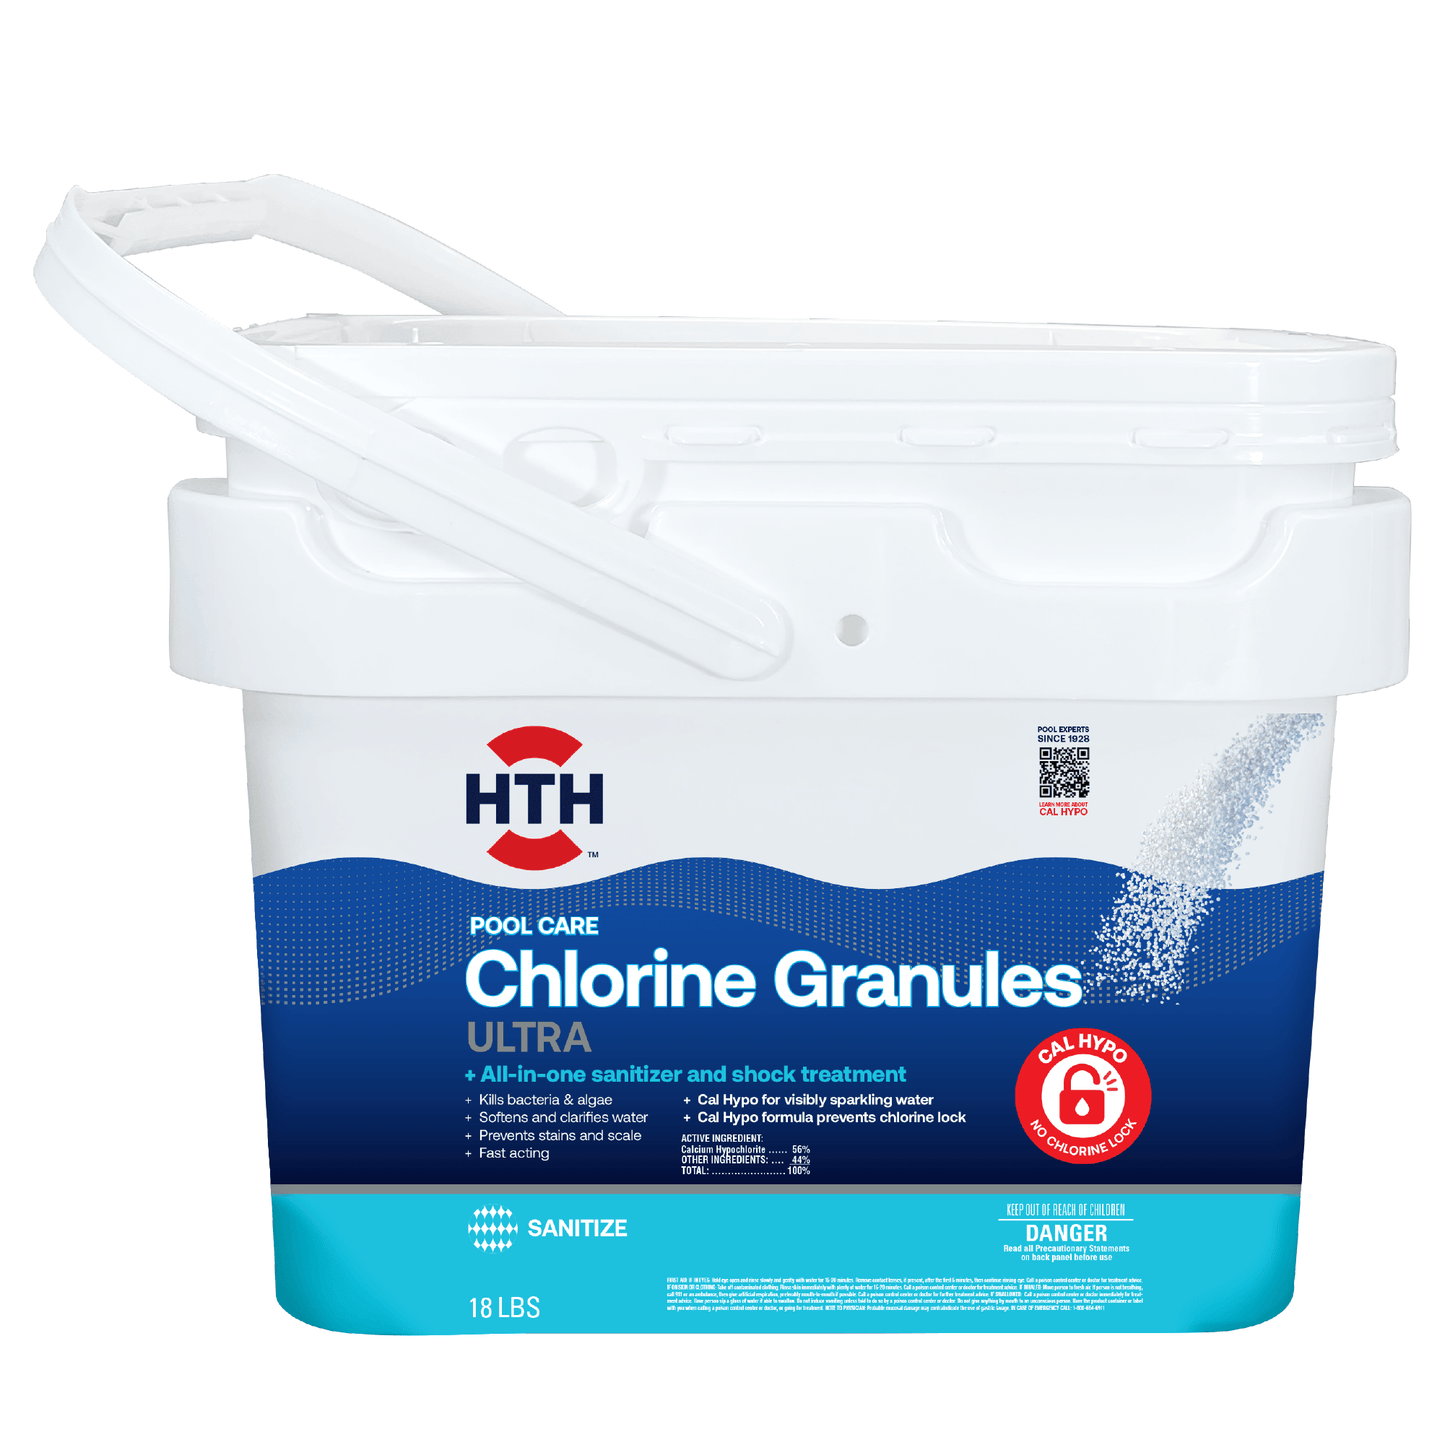 HTH™ Pool Care Chlorine Granules Ultra: Granular Chlorine